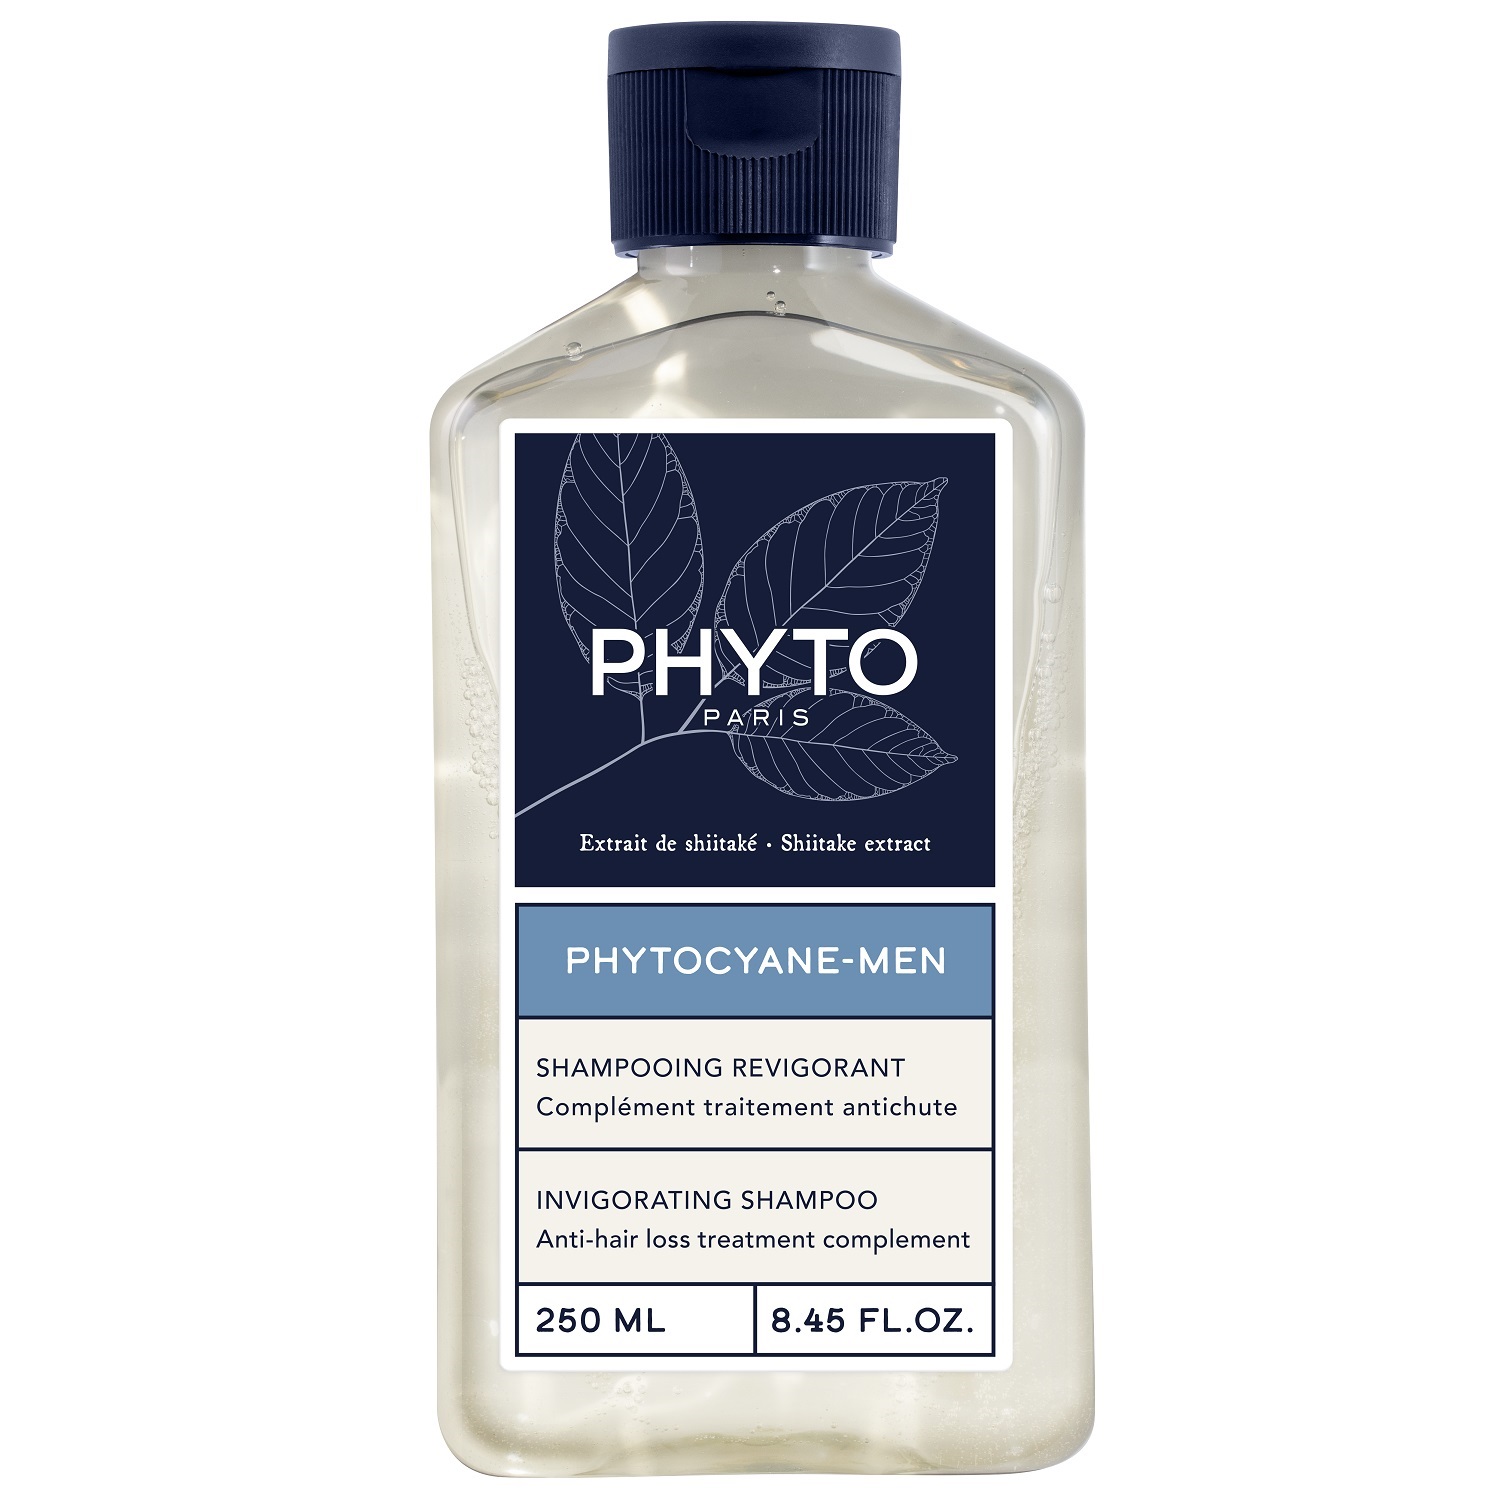 Phyto Мужской укрепляющий шампунь для волос, 250 мл (Phyto, Phytocyane) phyto набор для женщин сыворотка от выпадения волос 12x5 мл укрепляющий шампунь 100 мл phyto phytocyane